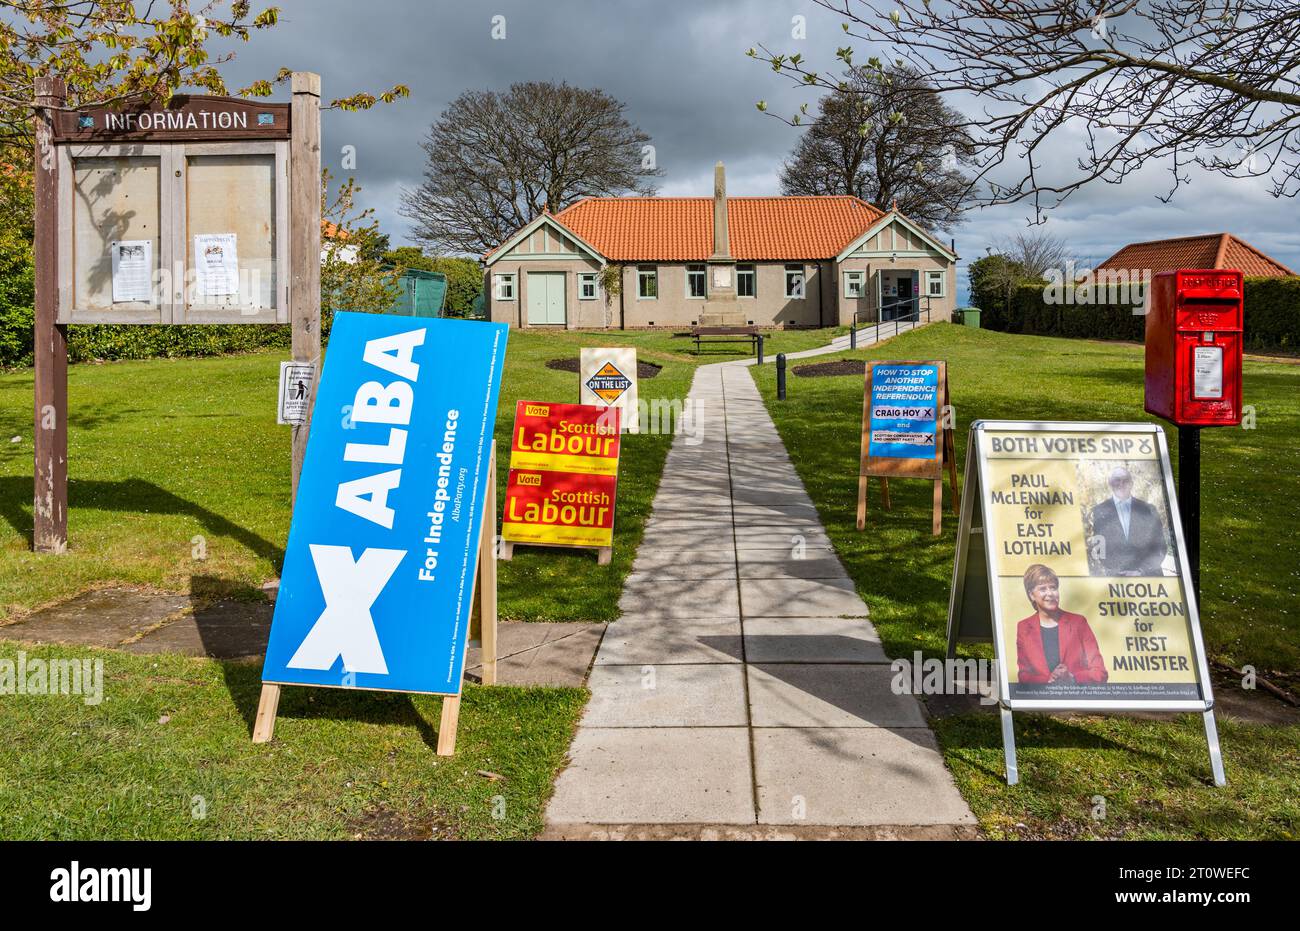 Wahllokal im Dorf Athelstaneford am Wahltag mit den Wahlausschüssen der politischen Partei, schottische Wahl 2021, East Lothian, Schottland, Vereinigtes Königreich Stockfoto